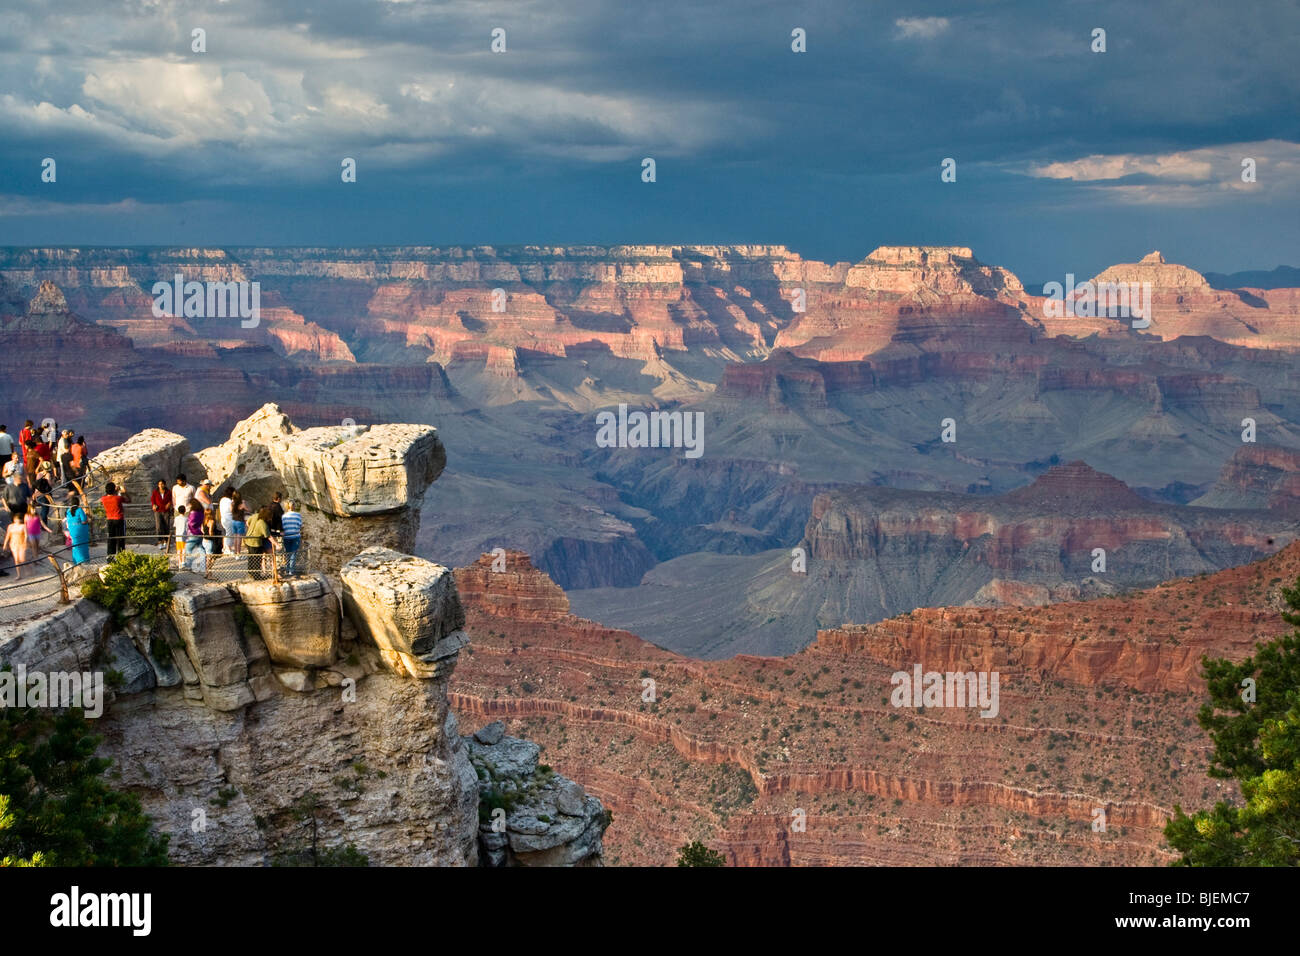 Les touristes à un point d'observation, Grand Canyon, South Rim, Arizona, Etats-Unis, high angle view Banque D'Images